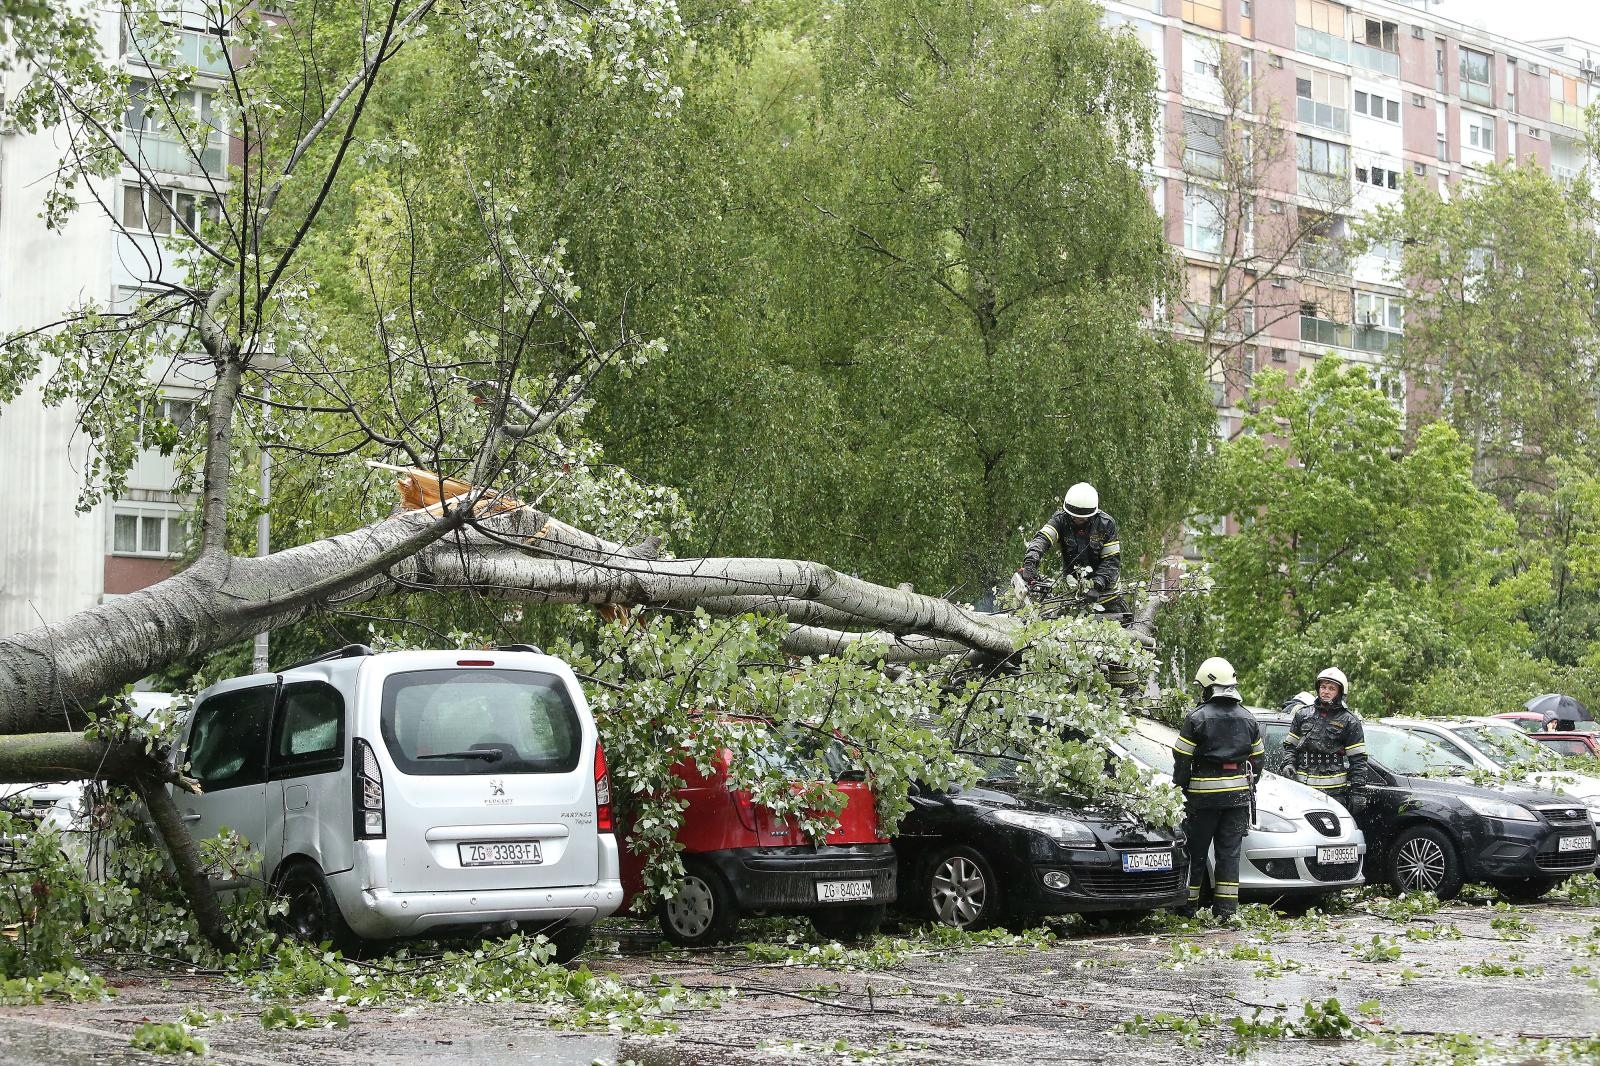 Vatrogasci su danas intervenirali i u naselju Sopot gdje se stablo srušilo na pet parkiranih automobila i prouzročilo ozbiljnu štetu na vozilima.